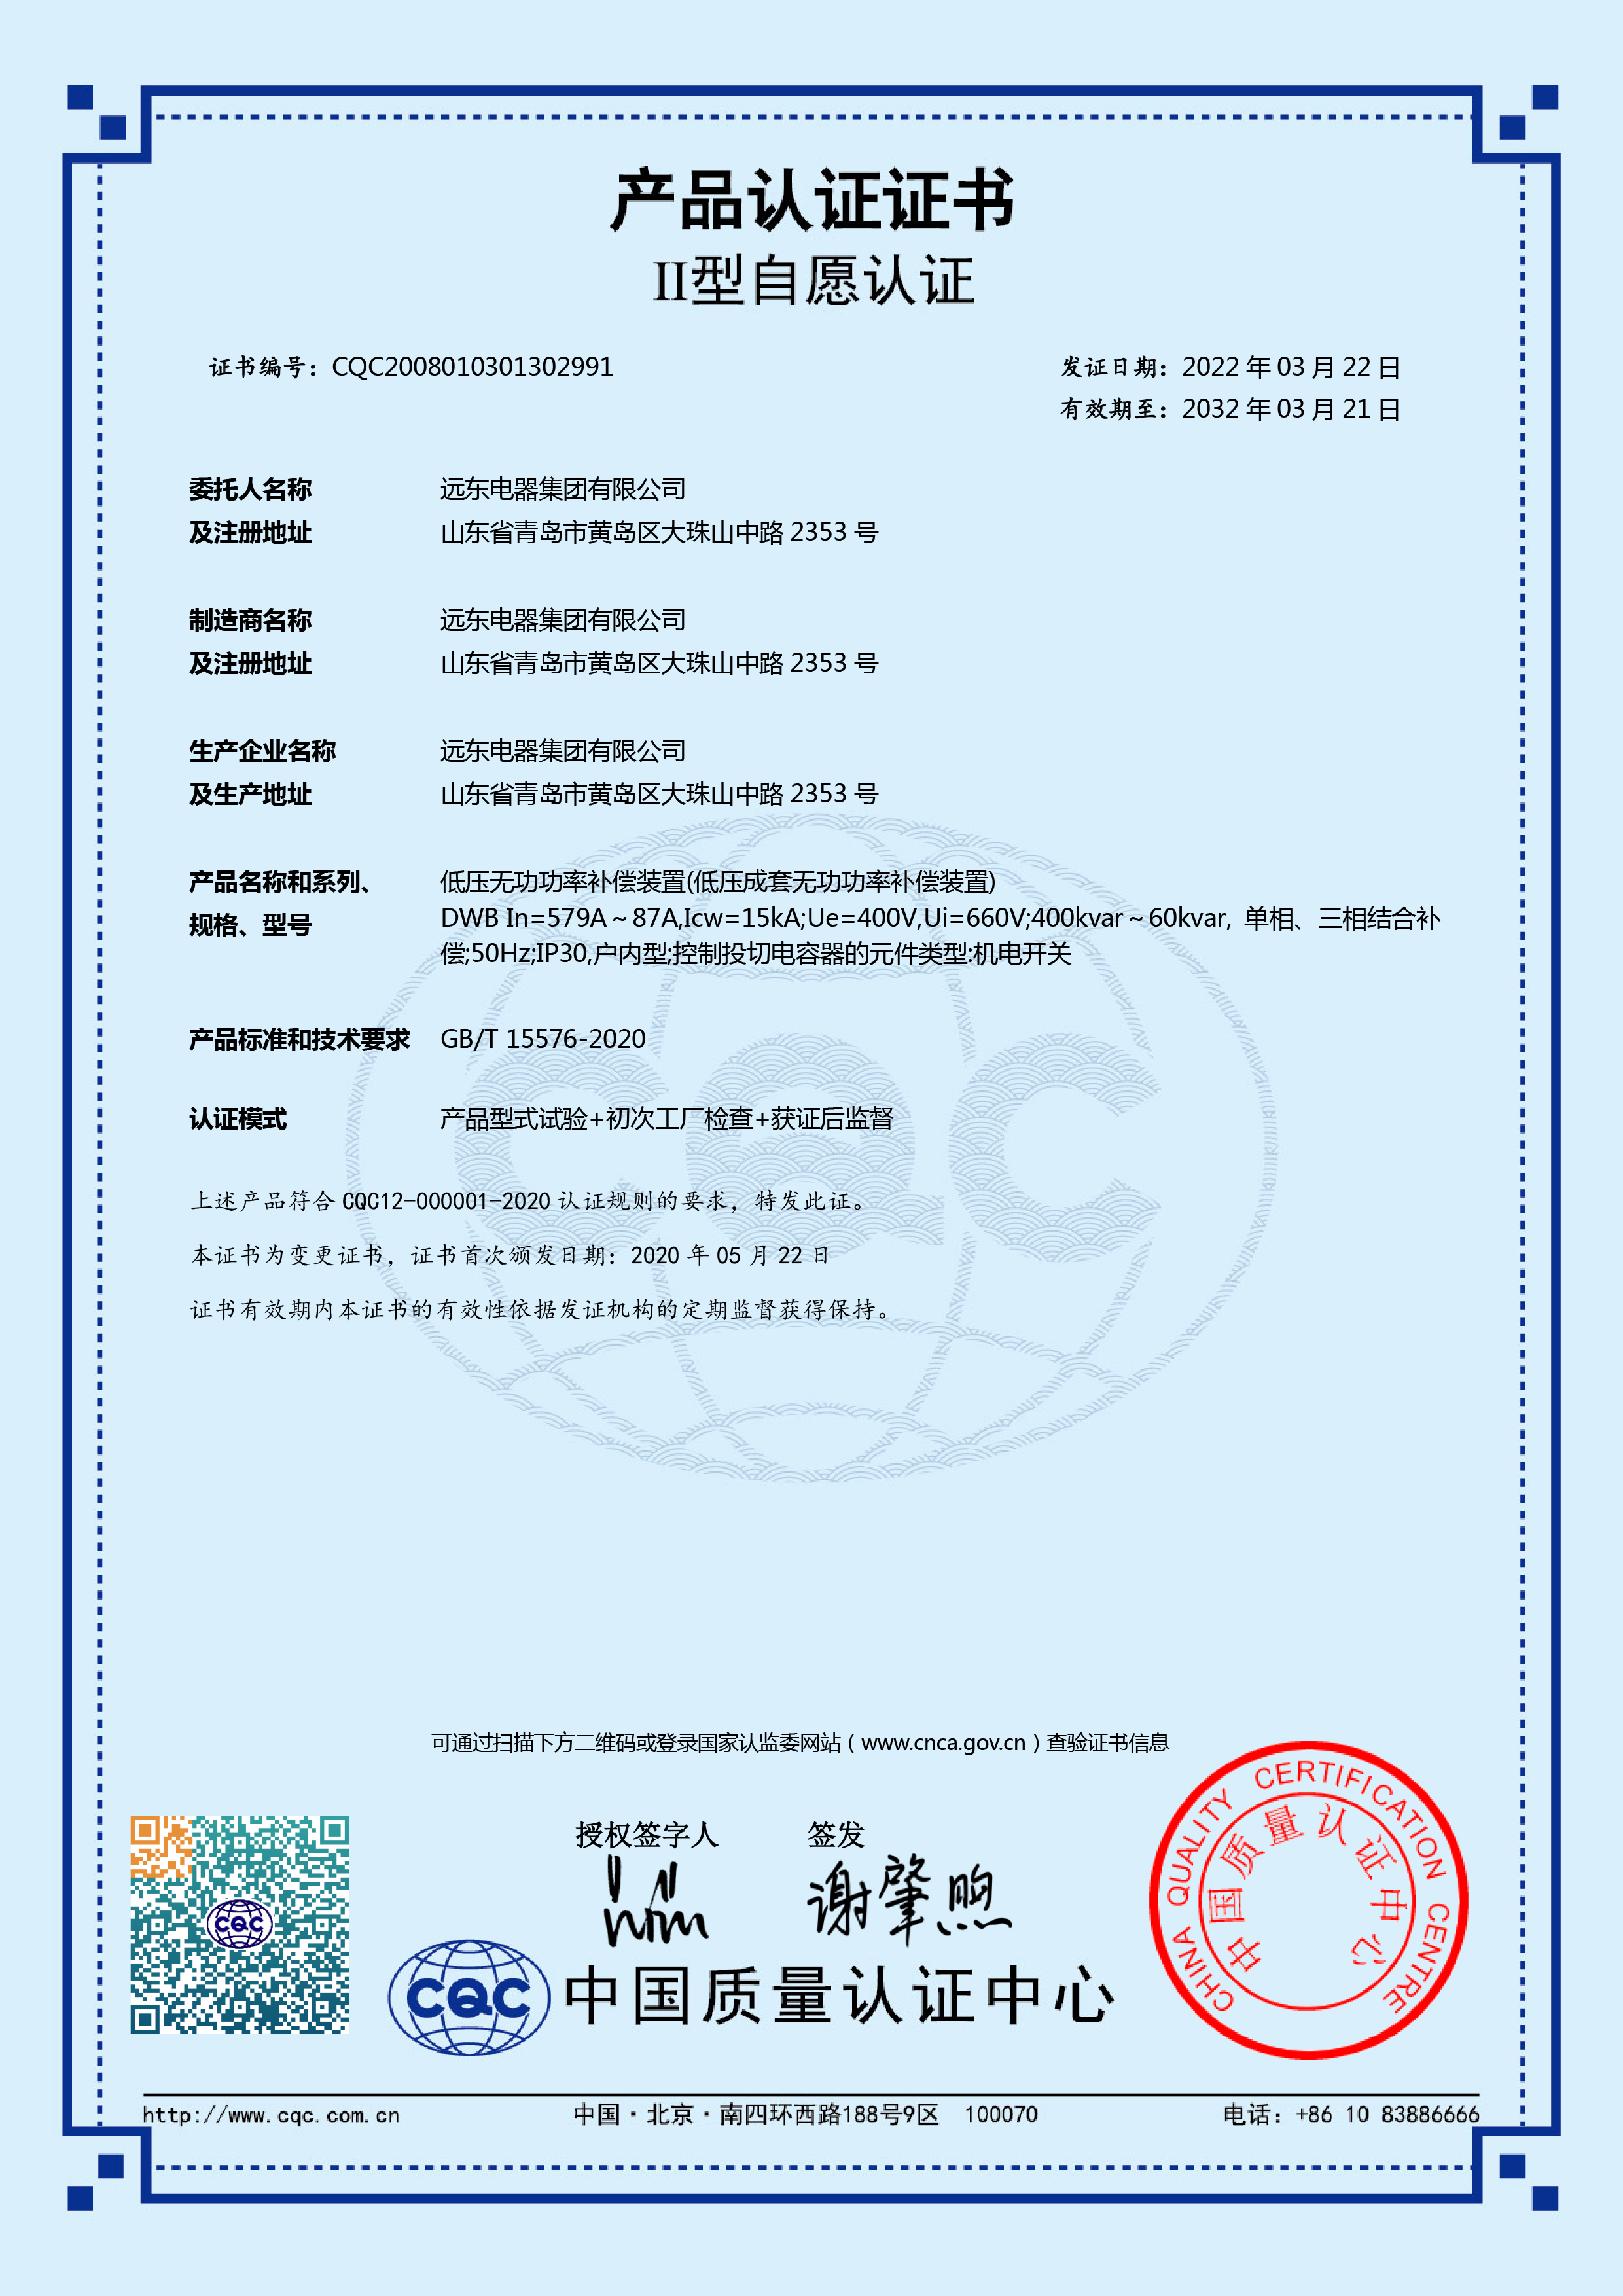 DWB 579A-87ACQC产品认证证书.jpg